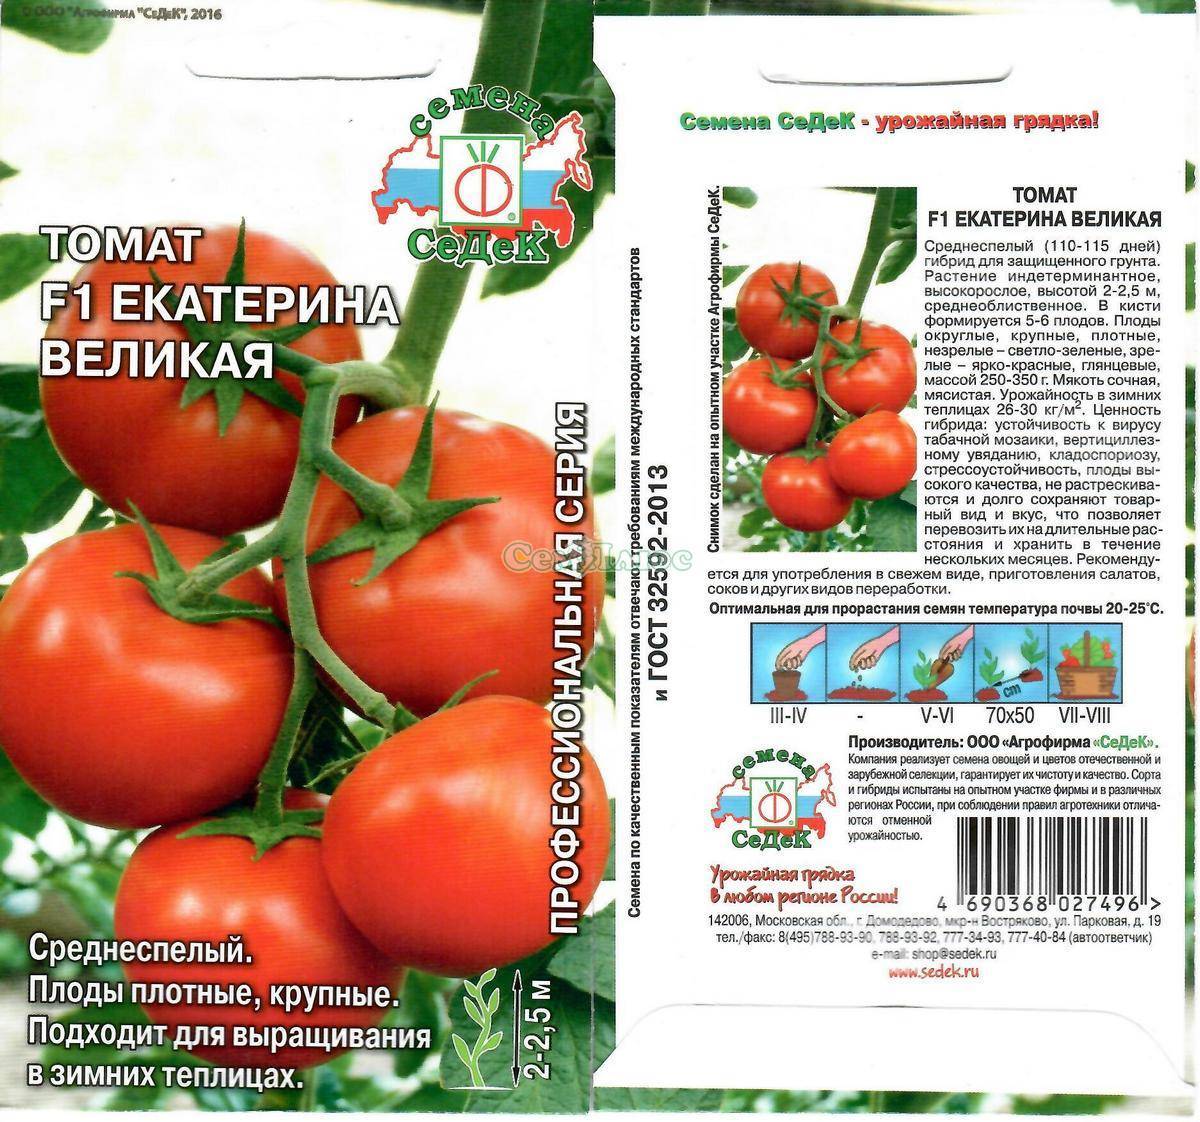 Томат катя f1: описание, характеристика, урожайность сорта, особенности выращивания и посадки помидоров, отзывы, фото